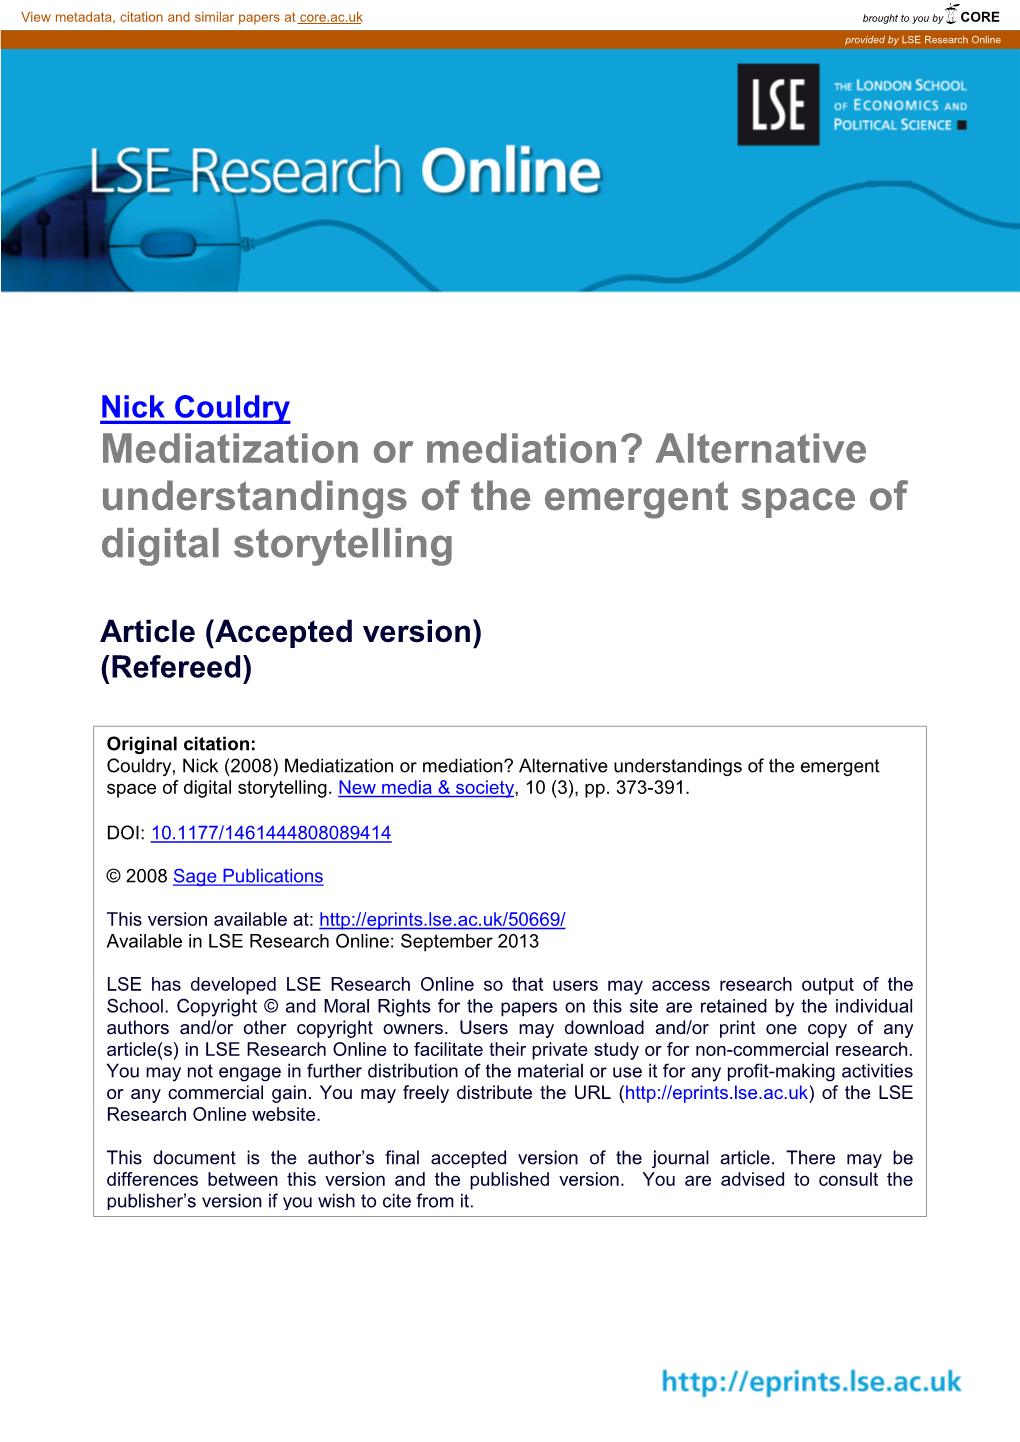 Alternative Understandings of the Emergent Space of Digital Storytelling